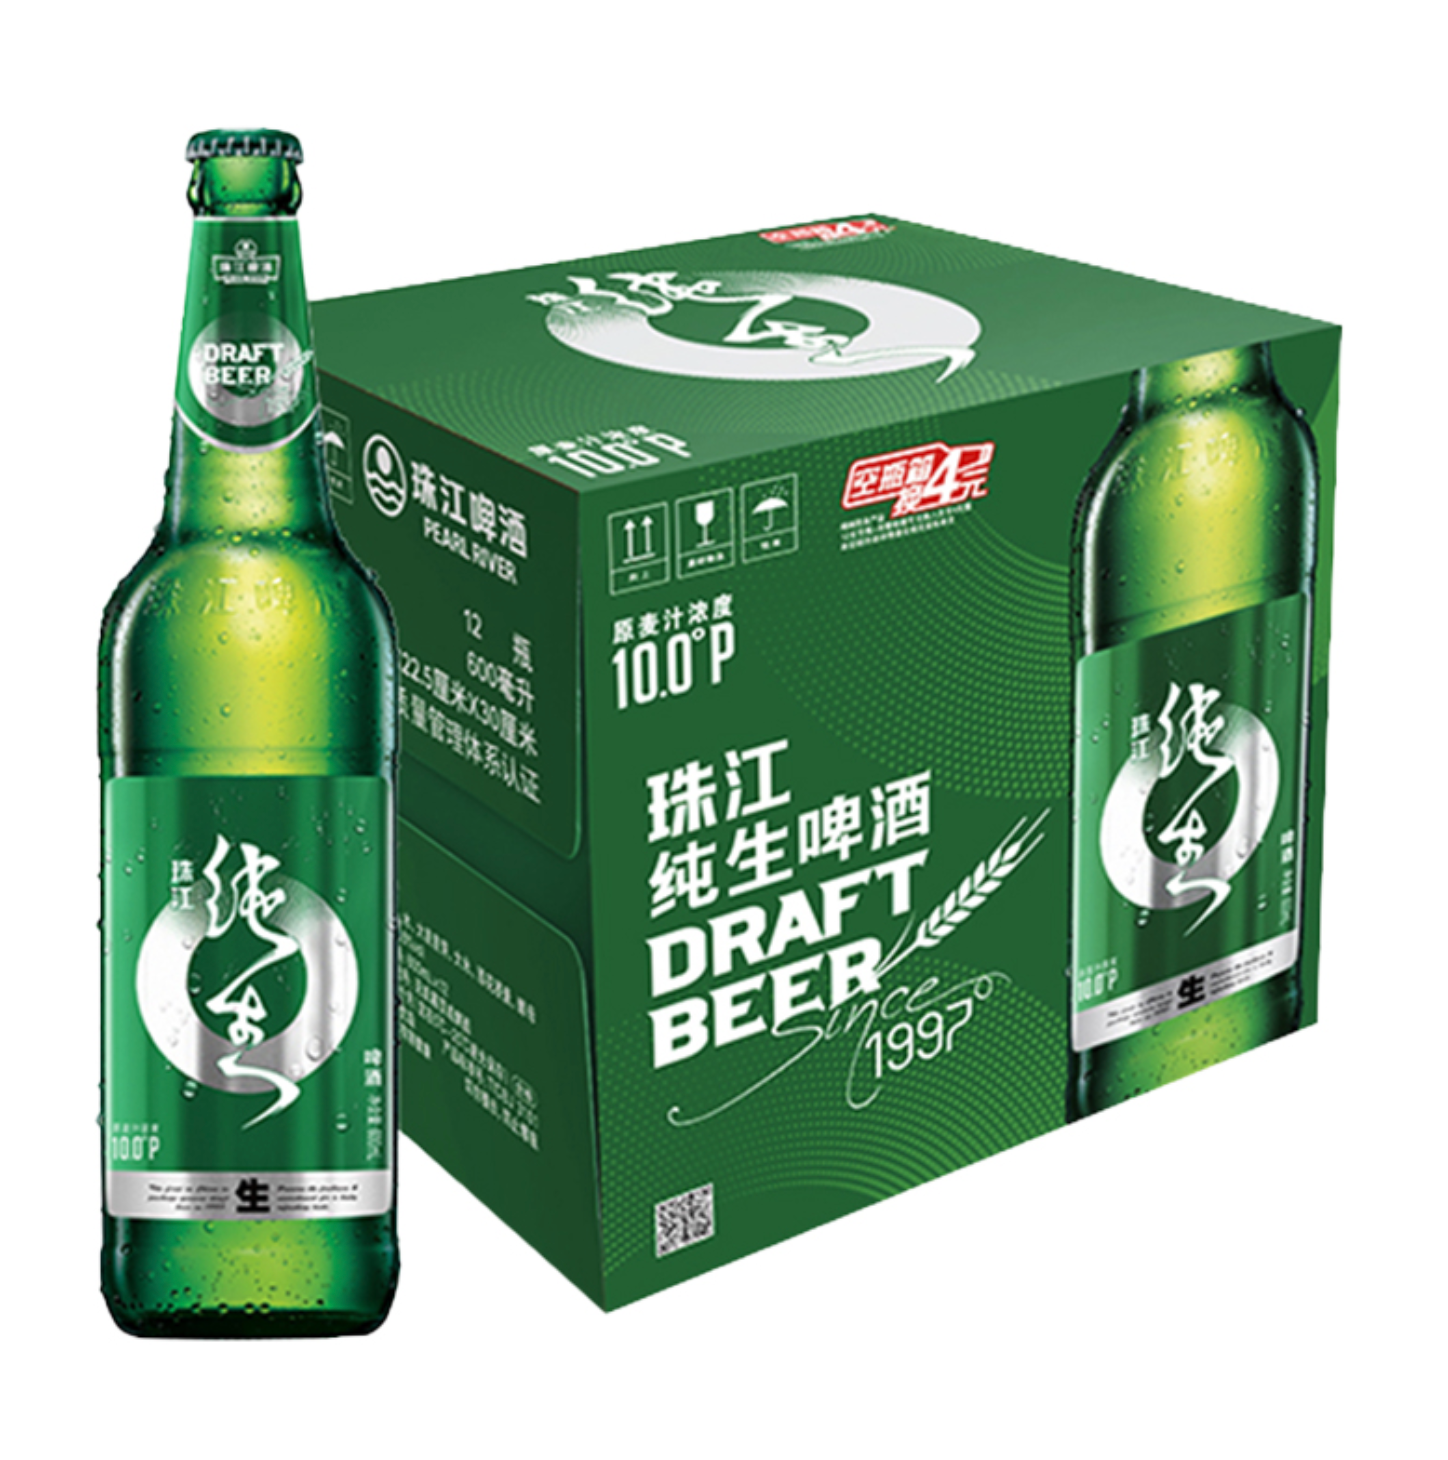 移动端：珠江啤酒 纯生啤酒 600ml*12瓶 赠冷萃500mL*3 47.9元